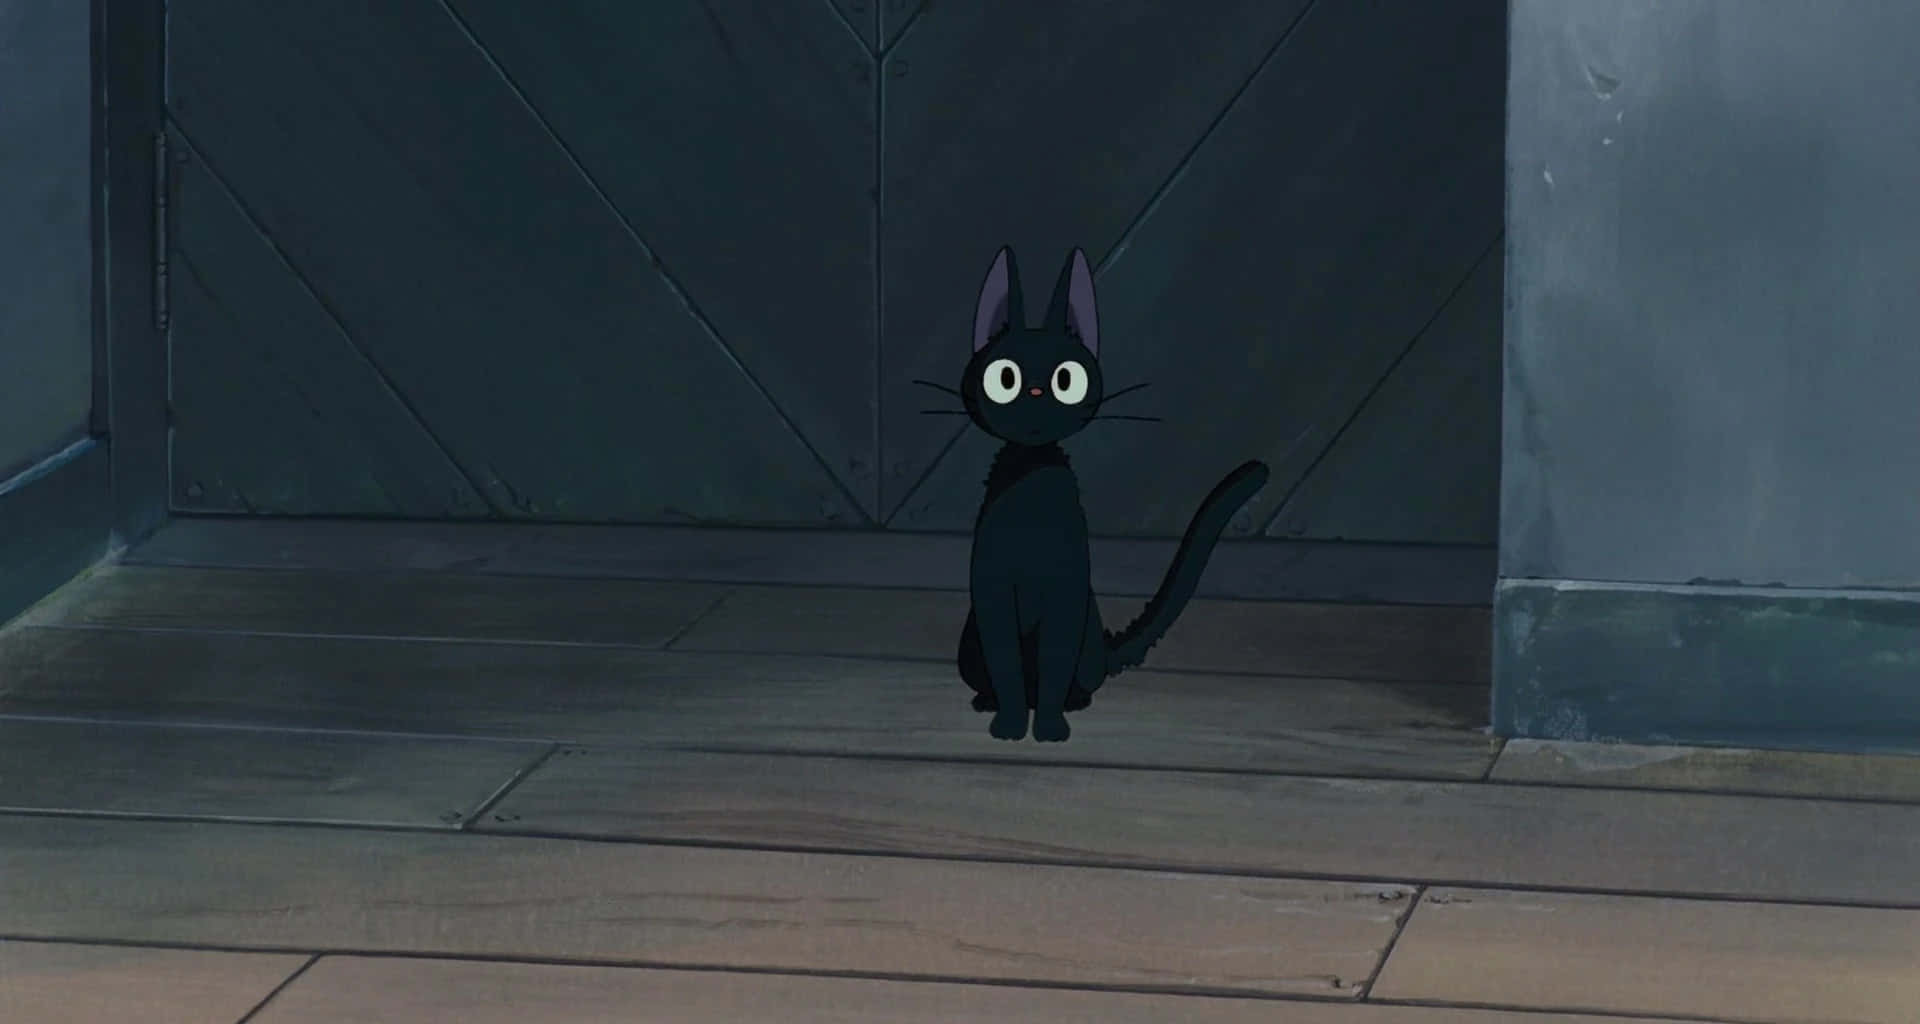 Jiji Cat - The Magical Black Cat in Studio Ghibli's Kiki's Delivery Service Wallpaper